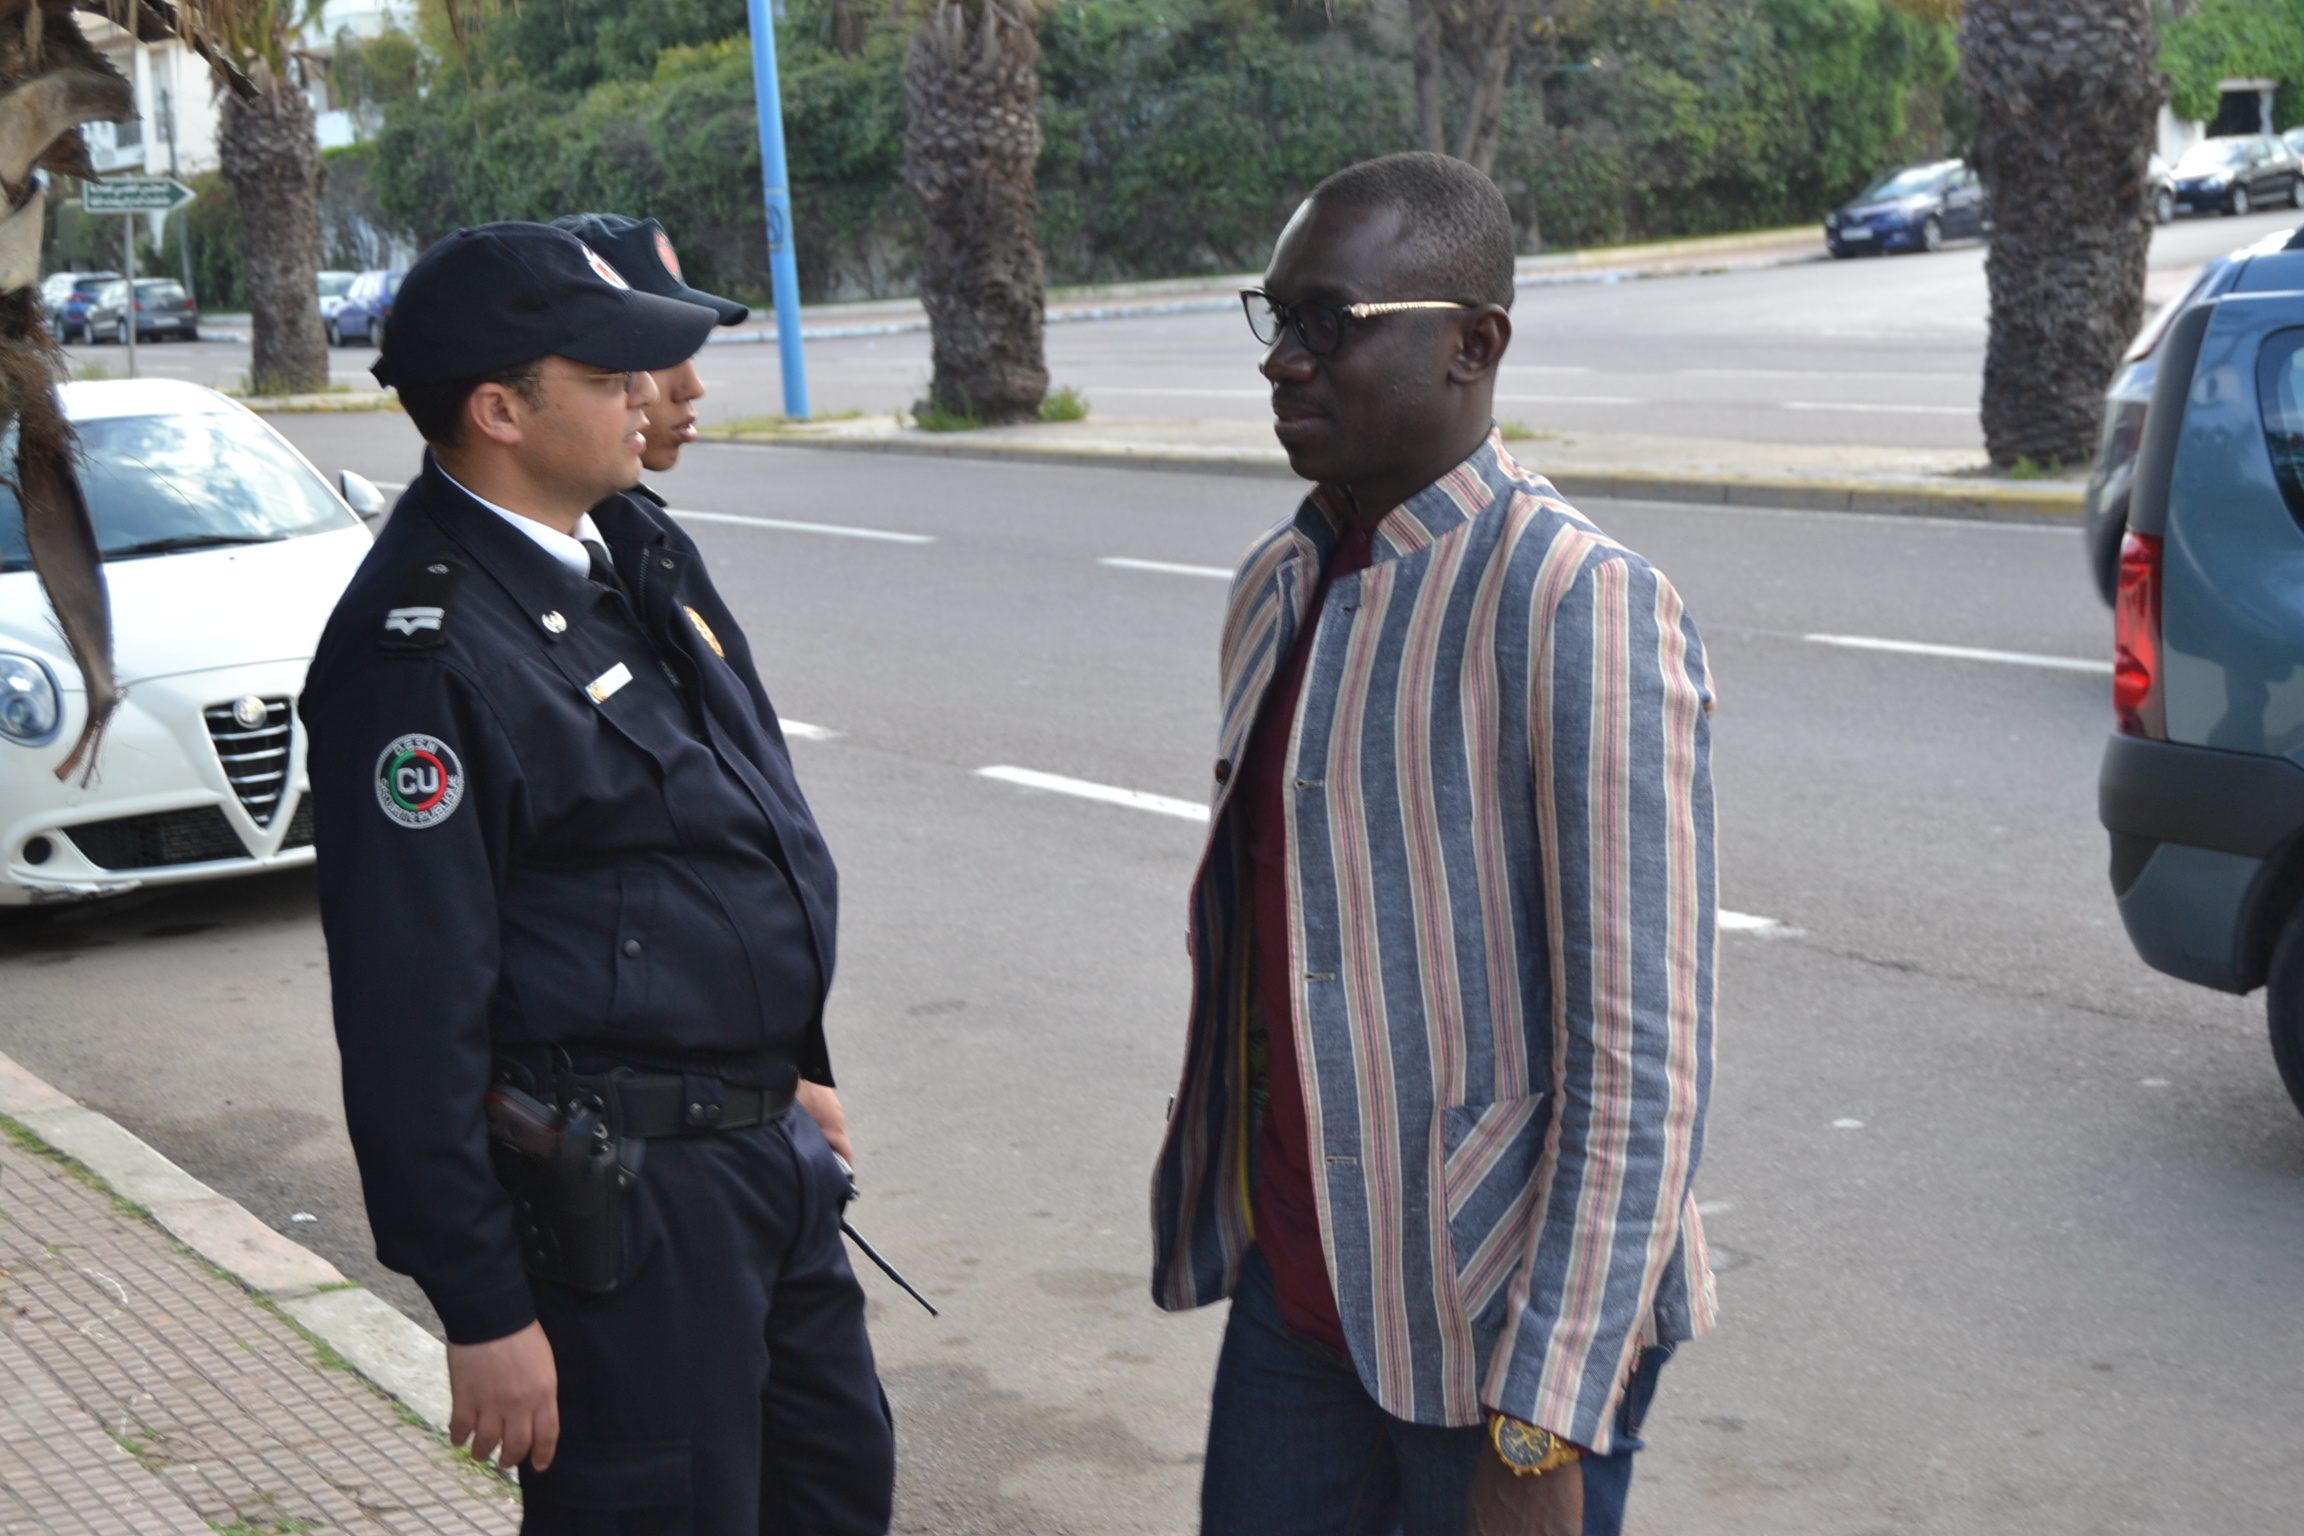 GRAND BEGUÉ DE CASABLANCA: PAPE DIOUF rencontre les autorités au Consulat du Sénégal à Casablanca